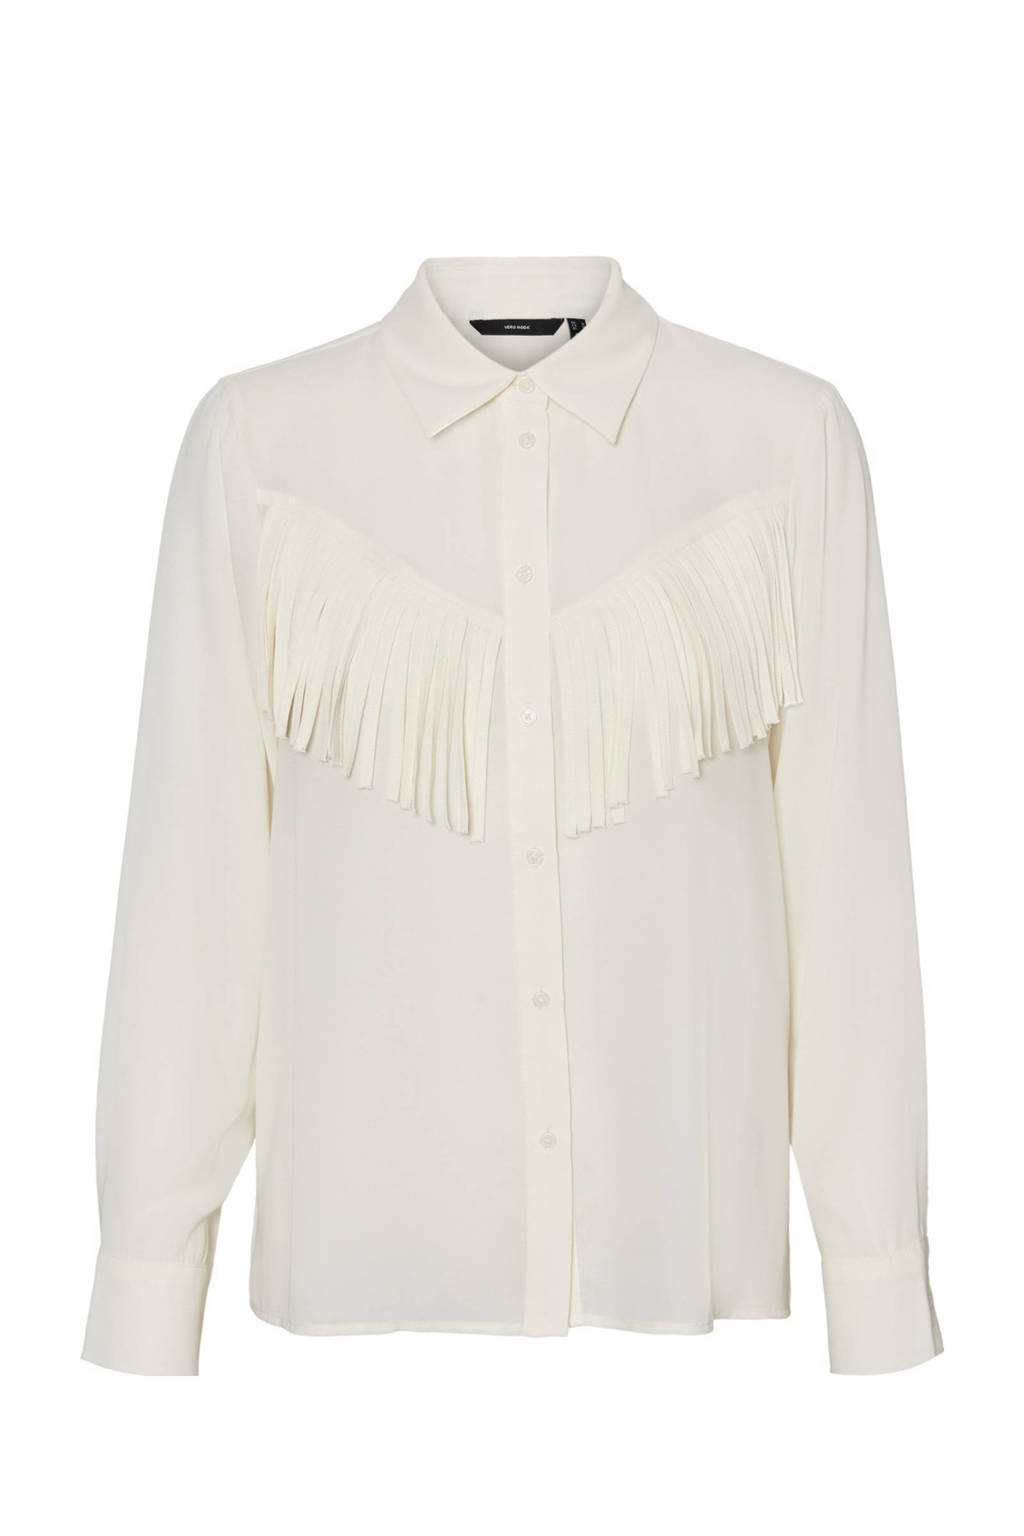 Witte dames VERO MODA blouse van polyester met lange mouwen, klassieke kraag, knoopsluiting en franjes